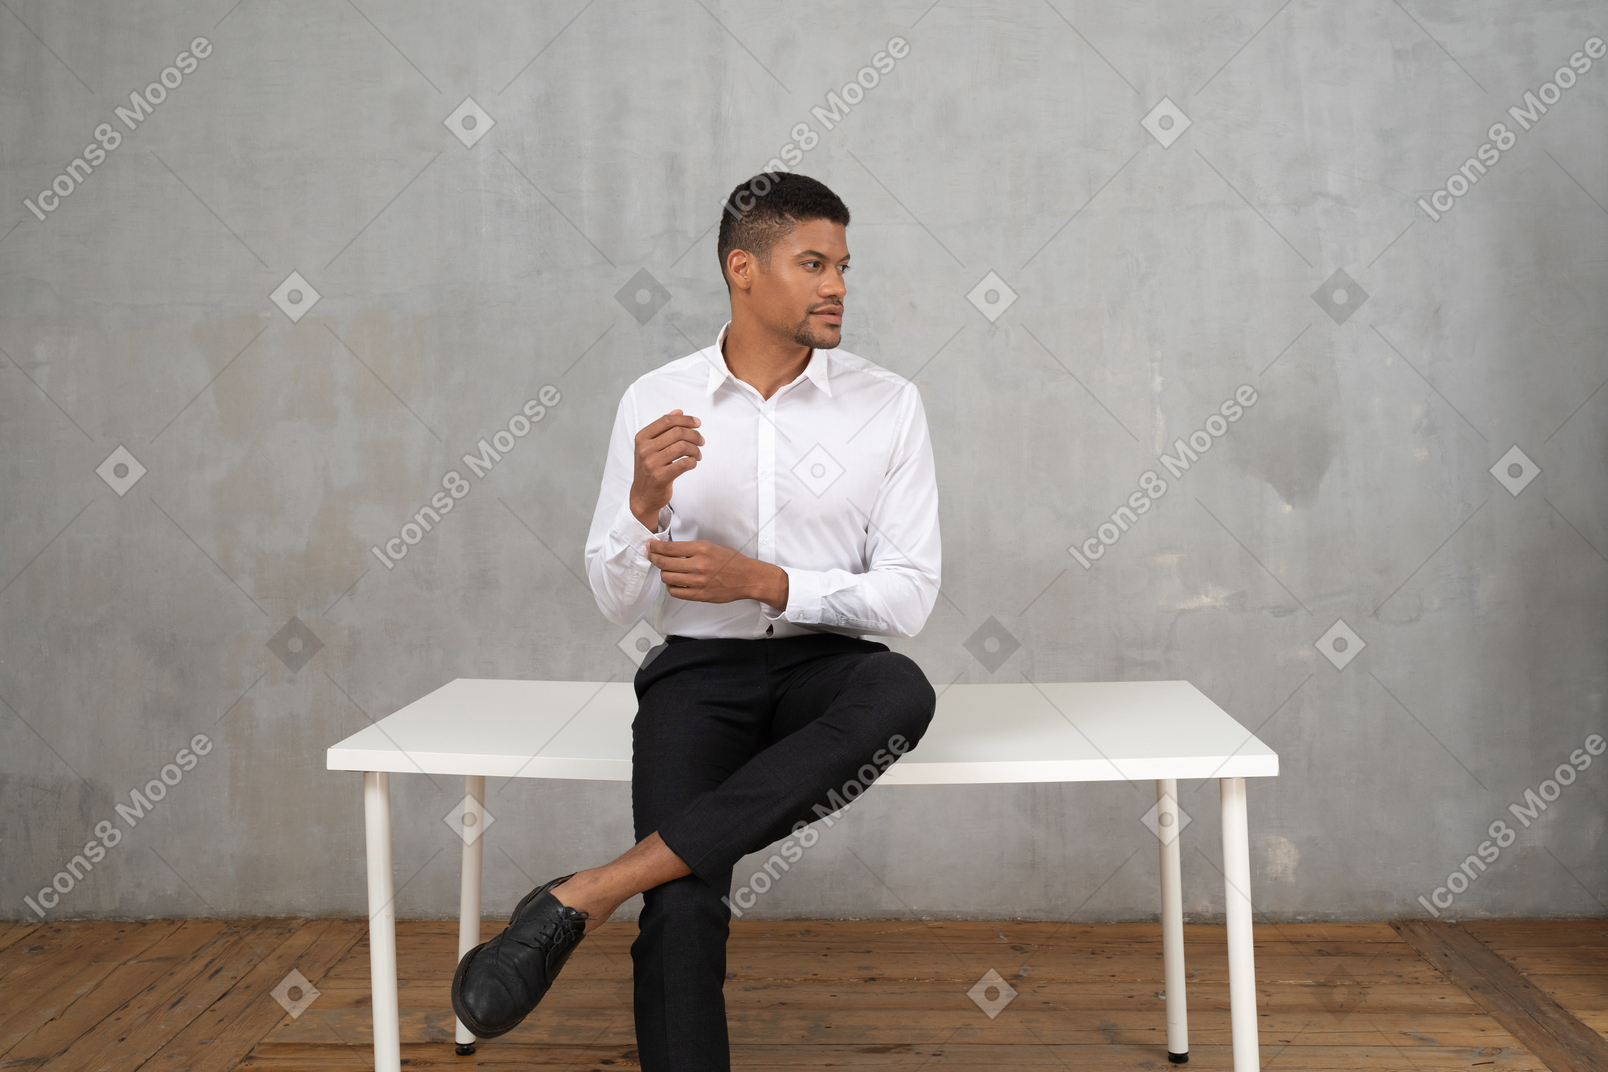 Mann in formeller kleidung sitzt auf einem tisch und fixiert seine manschette